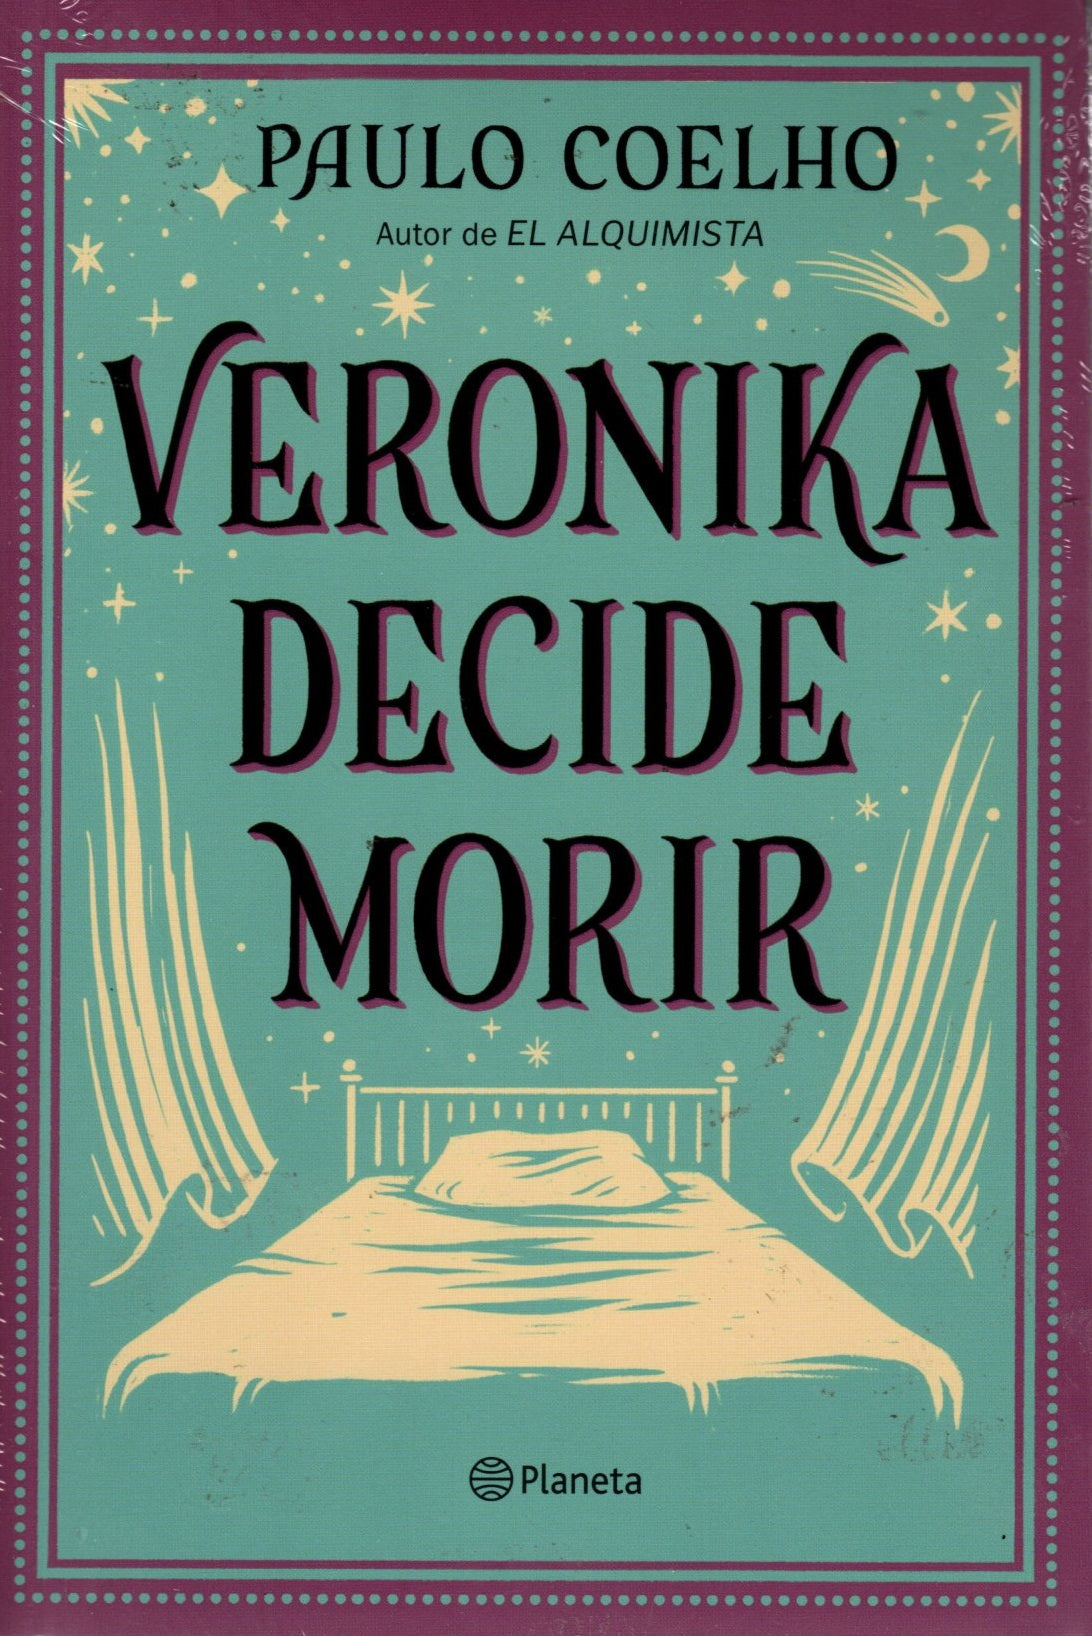 Libro Paulo Coelho - Veronika Decide Morir